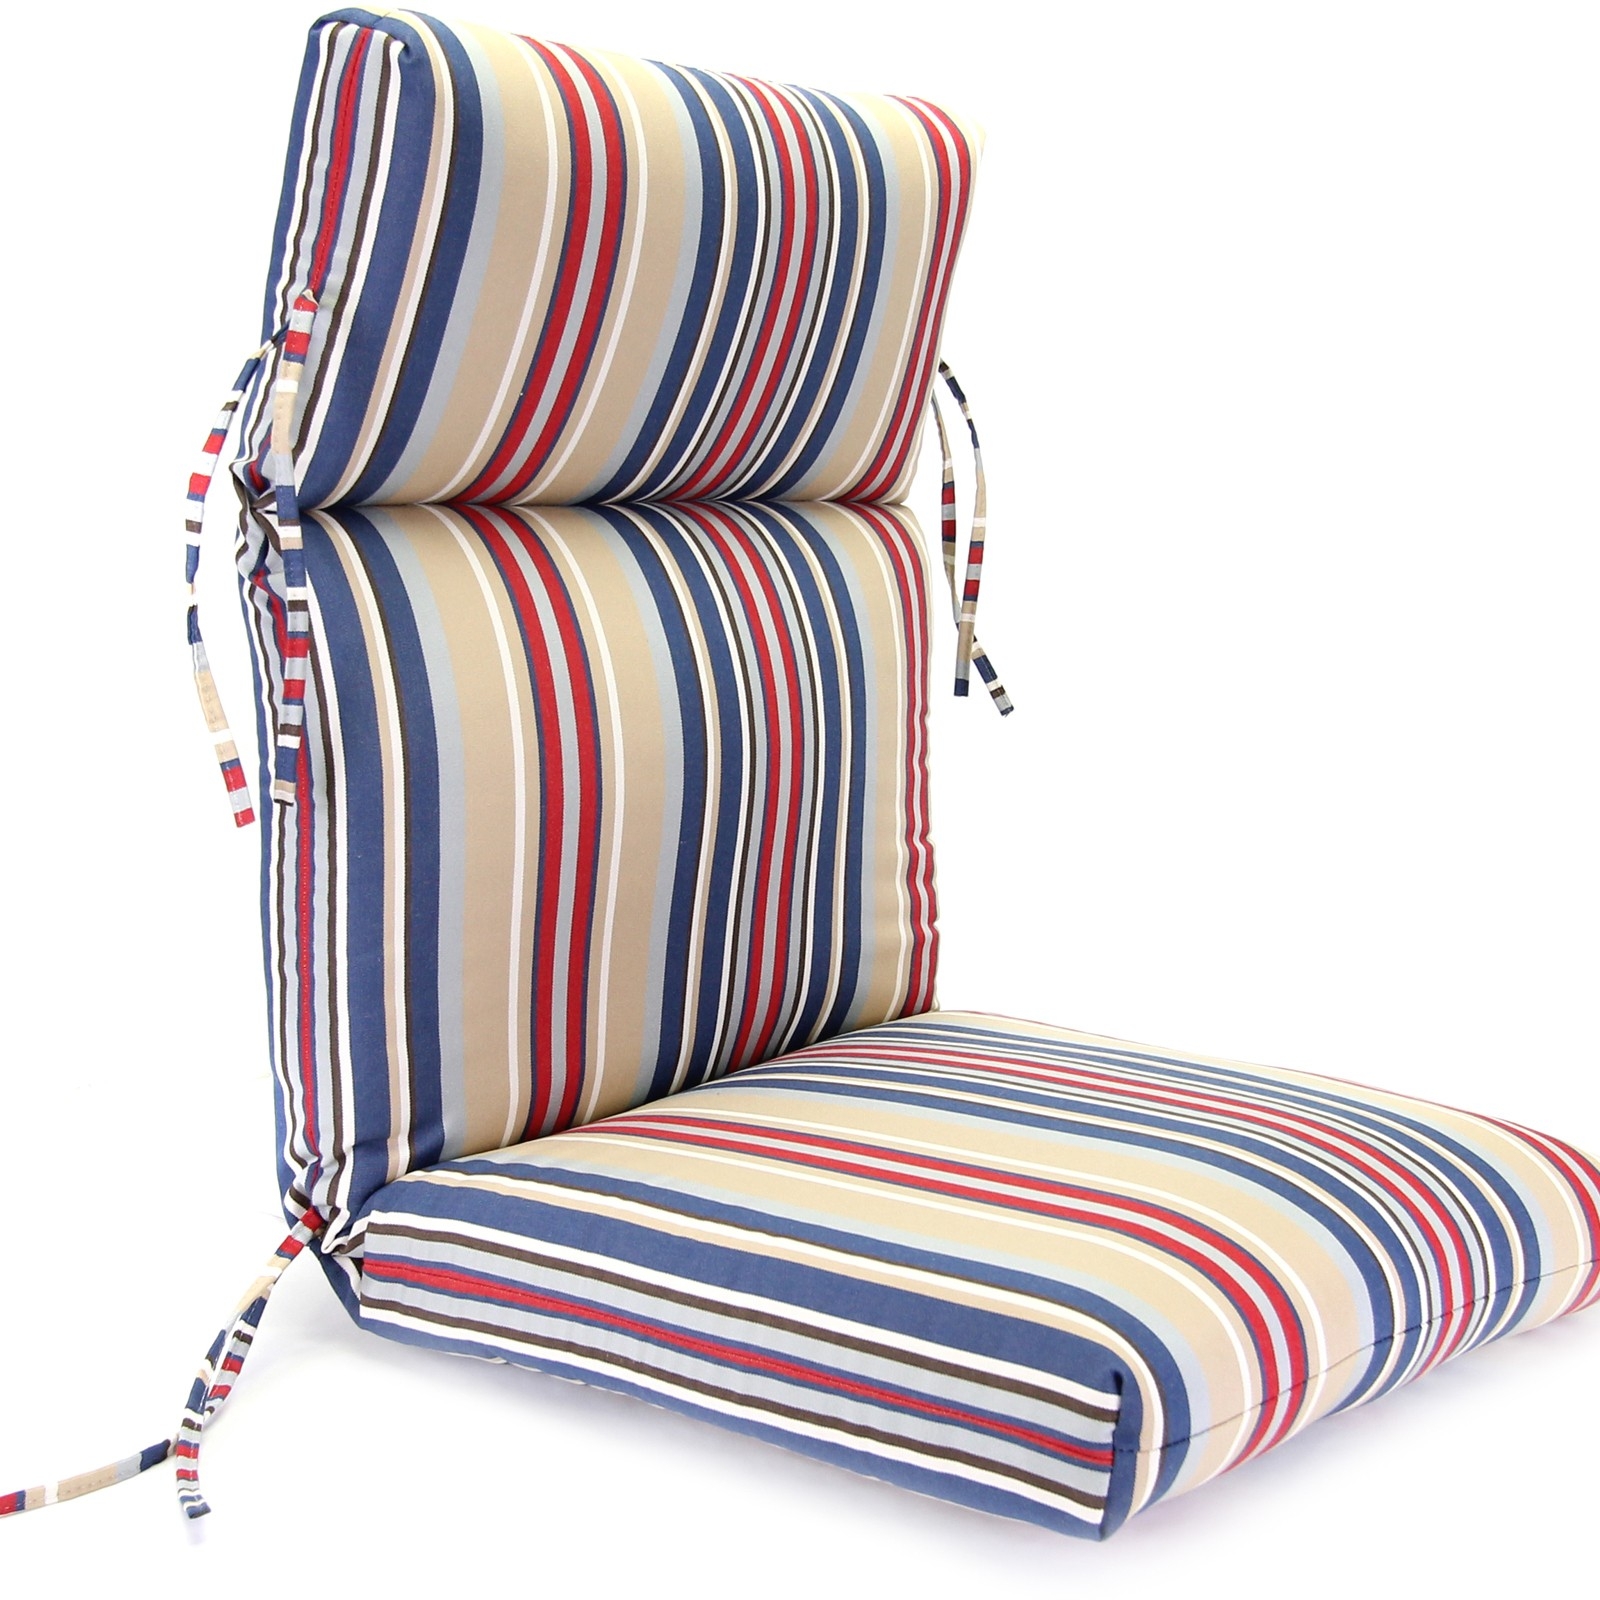 The Garden Chair Cushion 